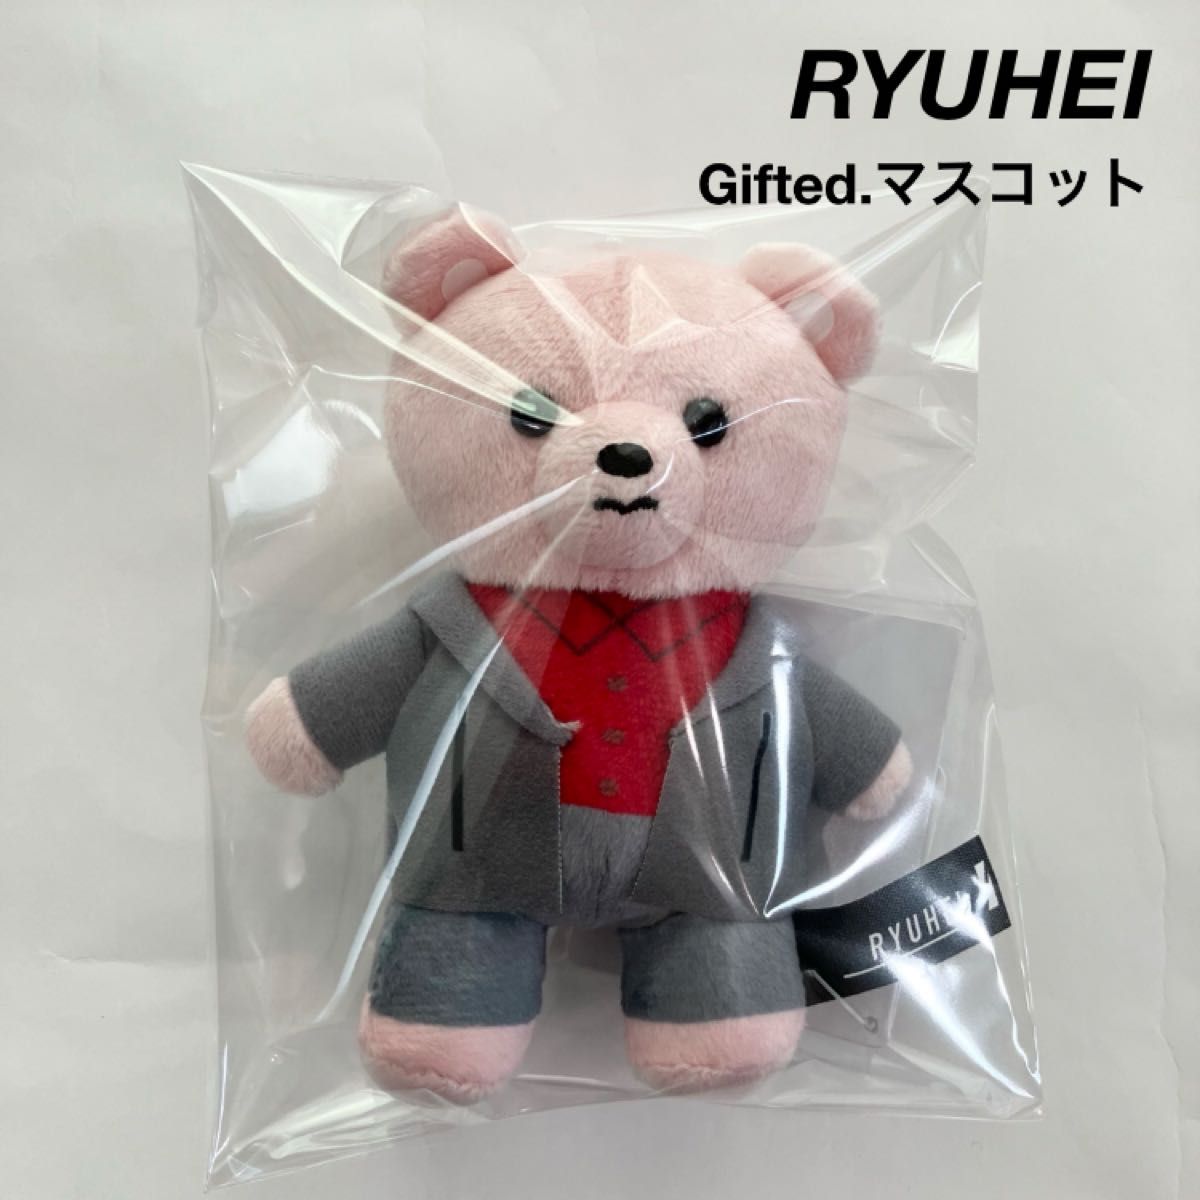 新品 BE:FIRST RYUHEI リュウヘイ モアプラスマスコット Gifted.